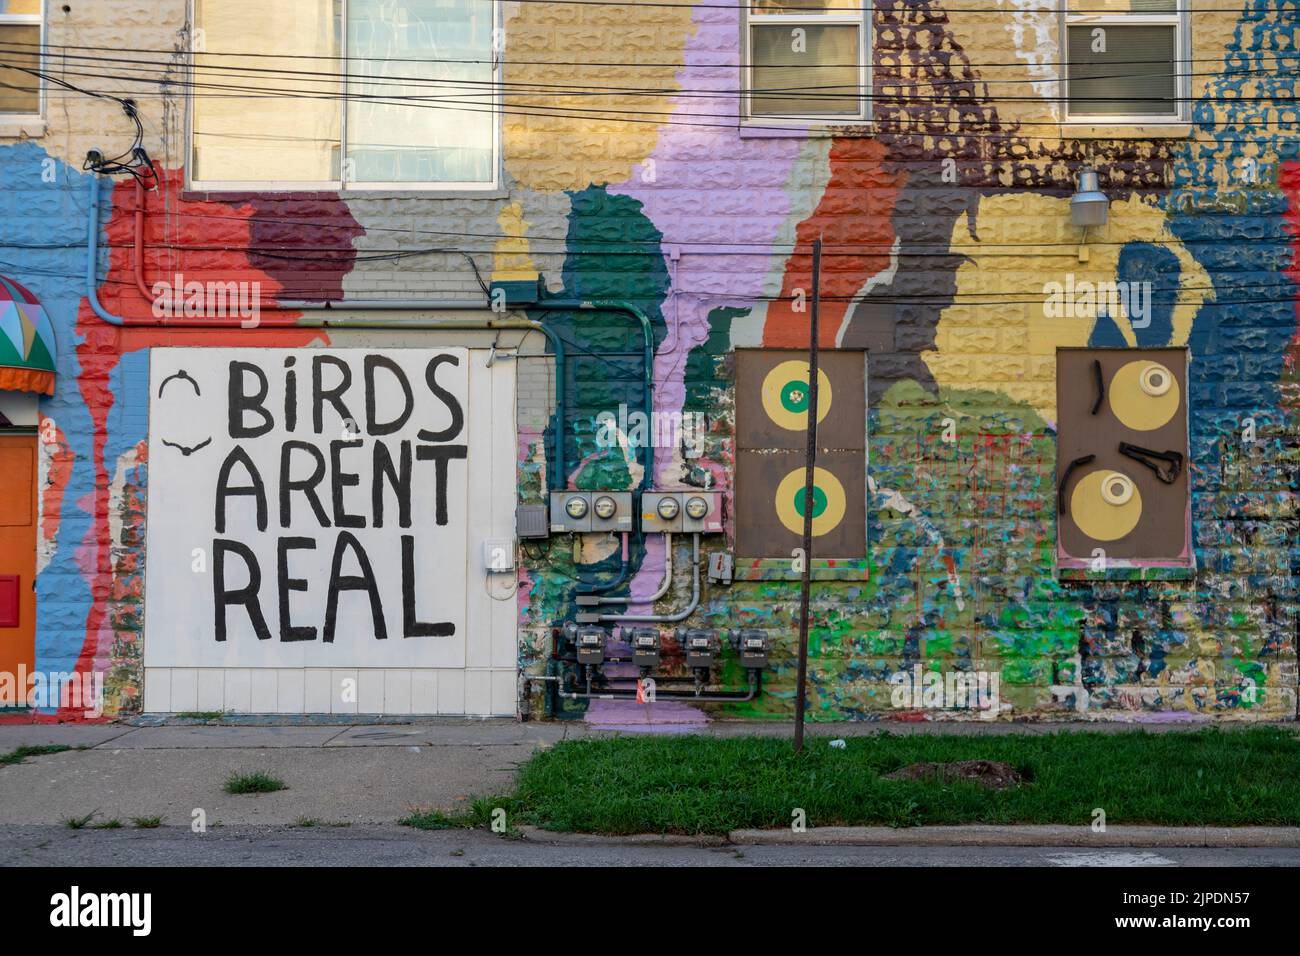 Kalamazoo, Michigan - Una pared pintada con el eslogan 'Birds are not Real'. El eslogan es una sátira popular de las teorías conspirativas inspiradas por Donald Trump. Foto de stock